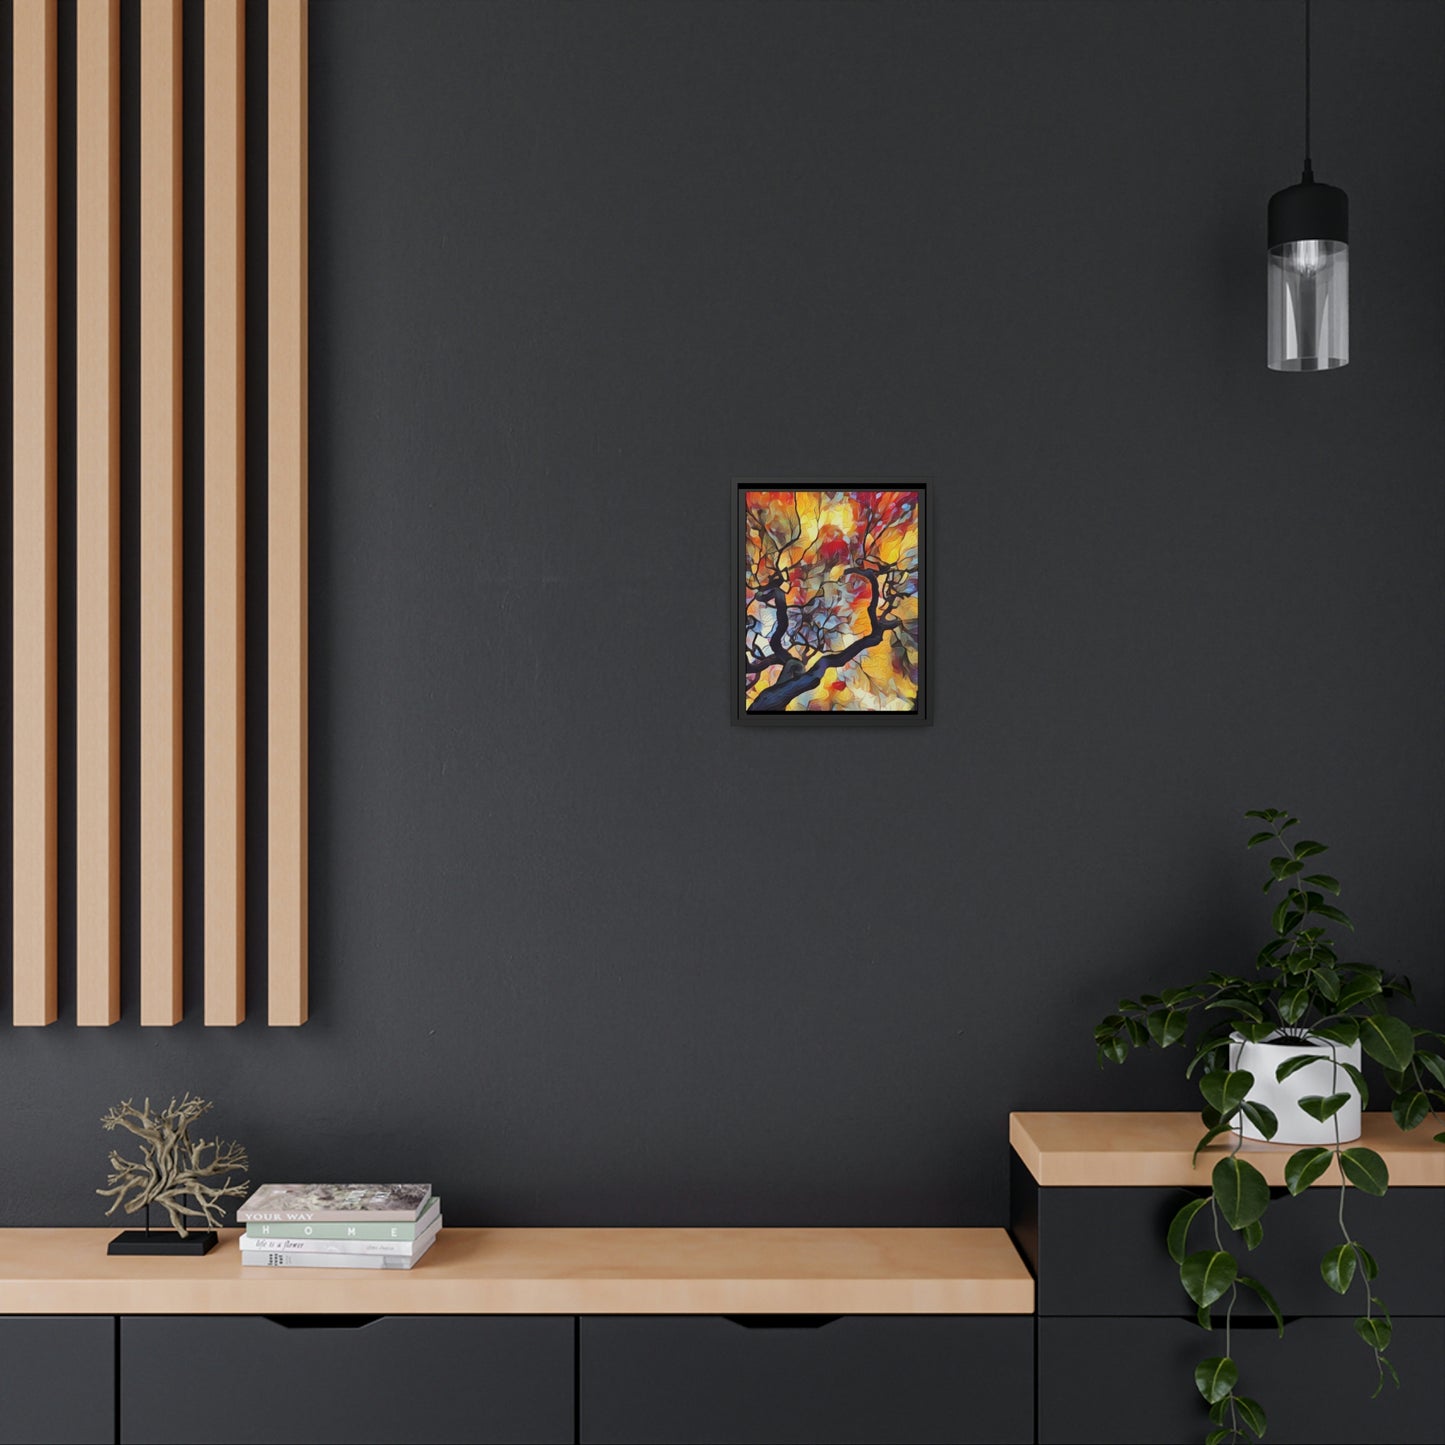 Japanese Maple Wall Decor on a Black-Framed Canvas